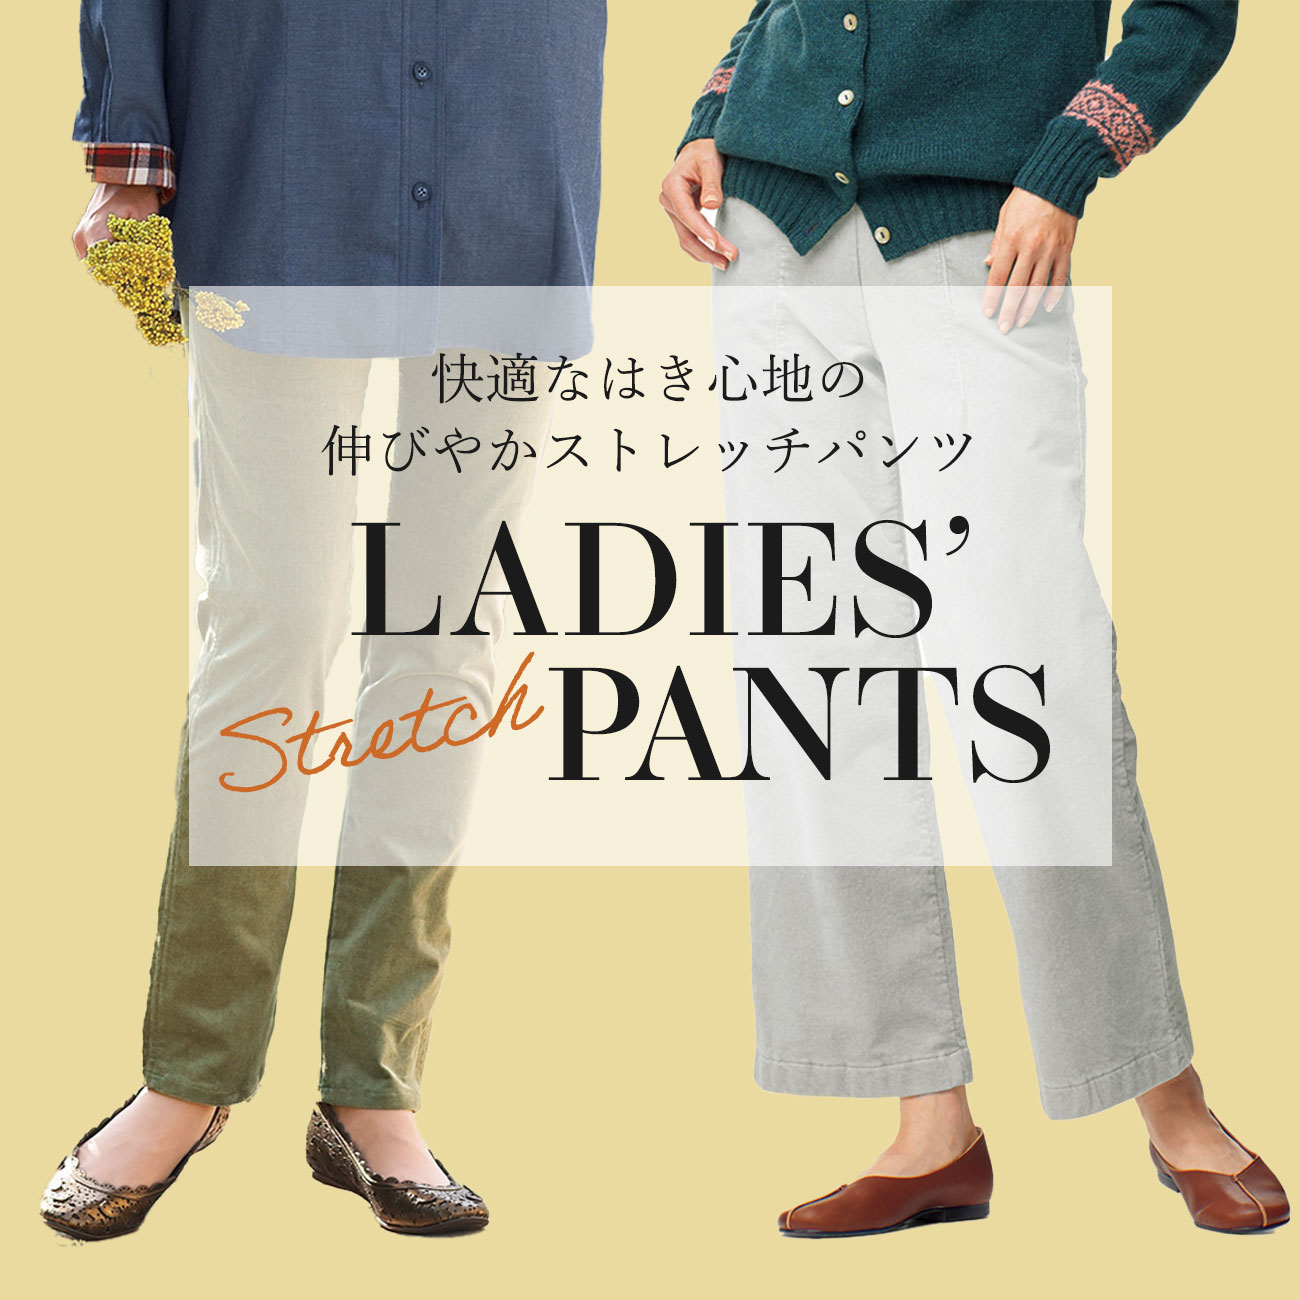 【特集】快適ストレッチパンツ for Ladies